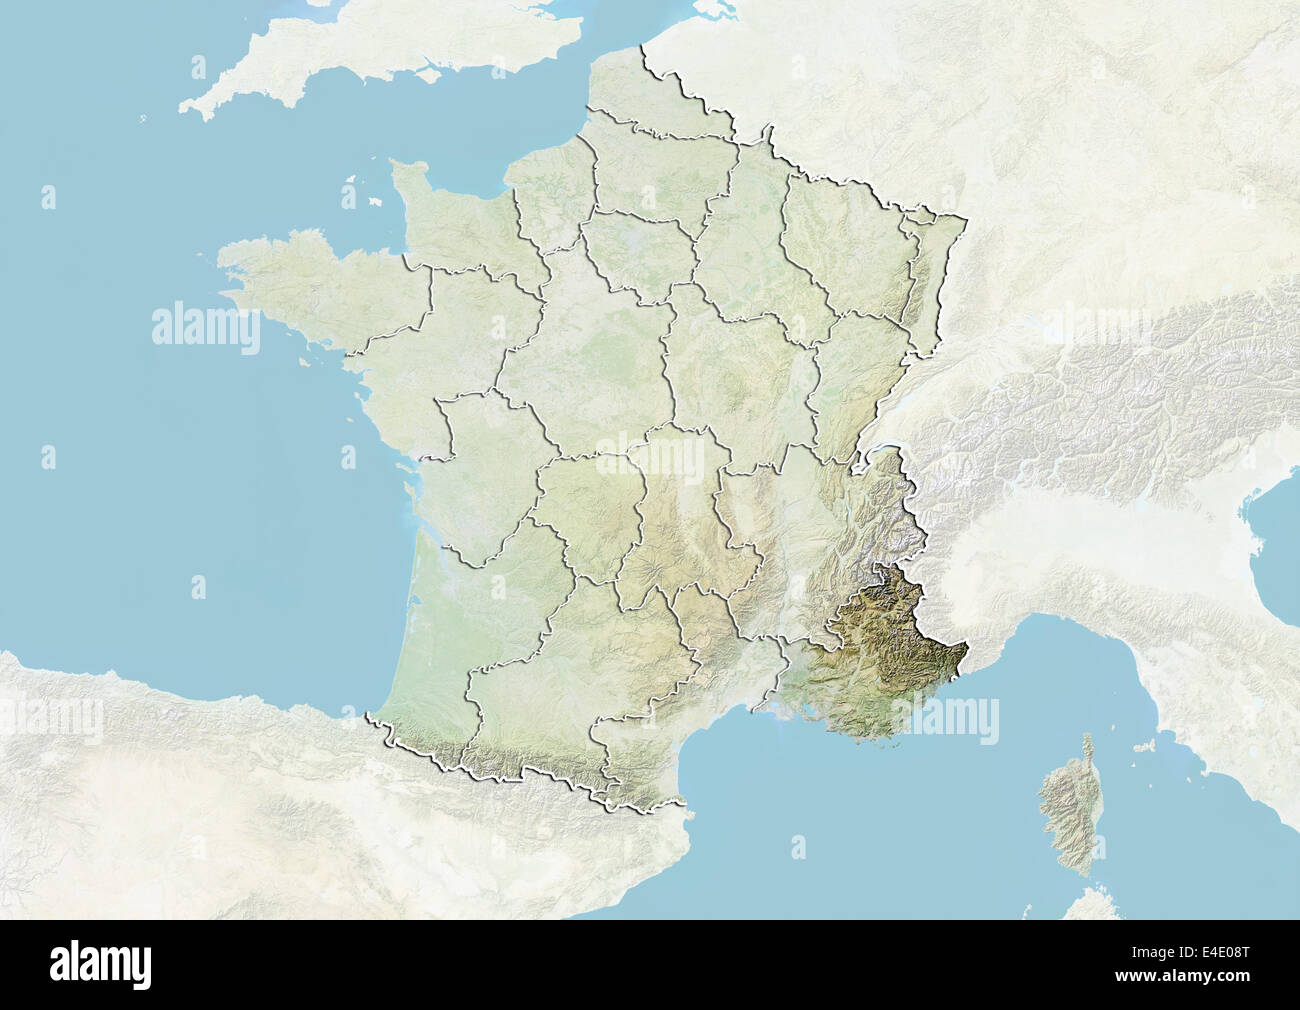 La France et la région de Provence-Alpes-Côte d'Azur, carte en relief Banque D'Images